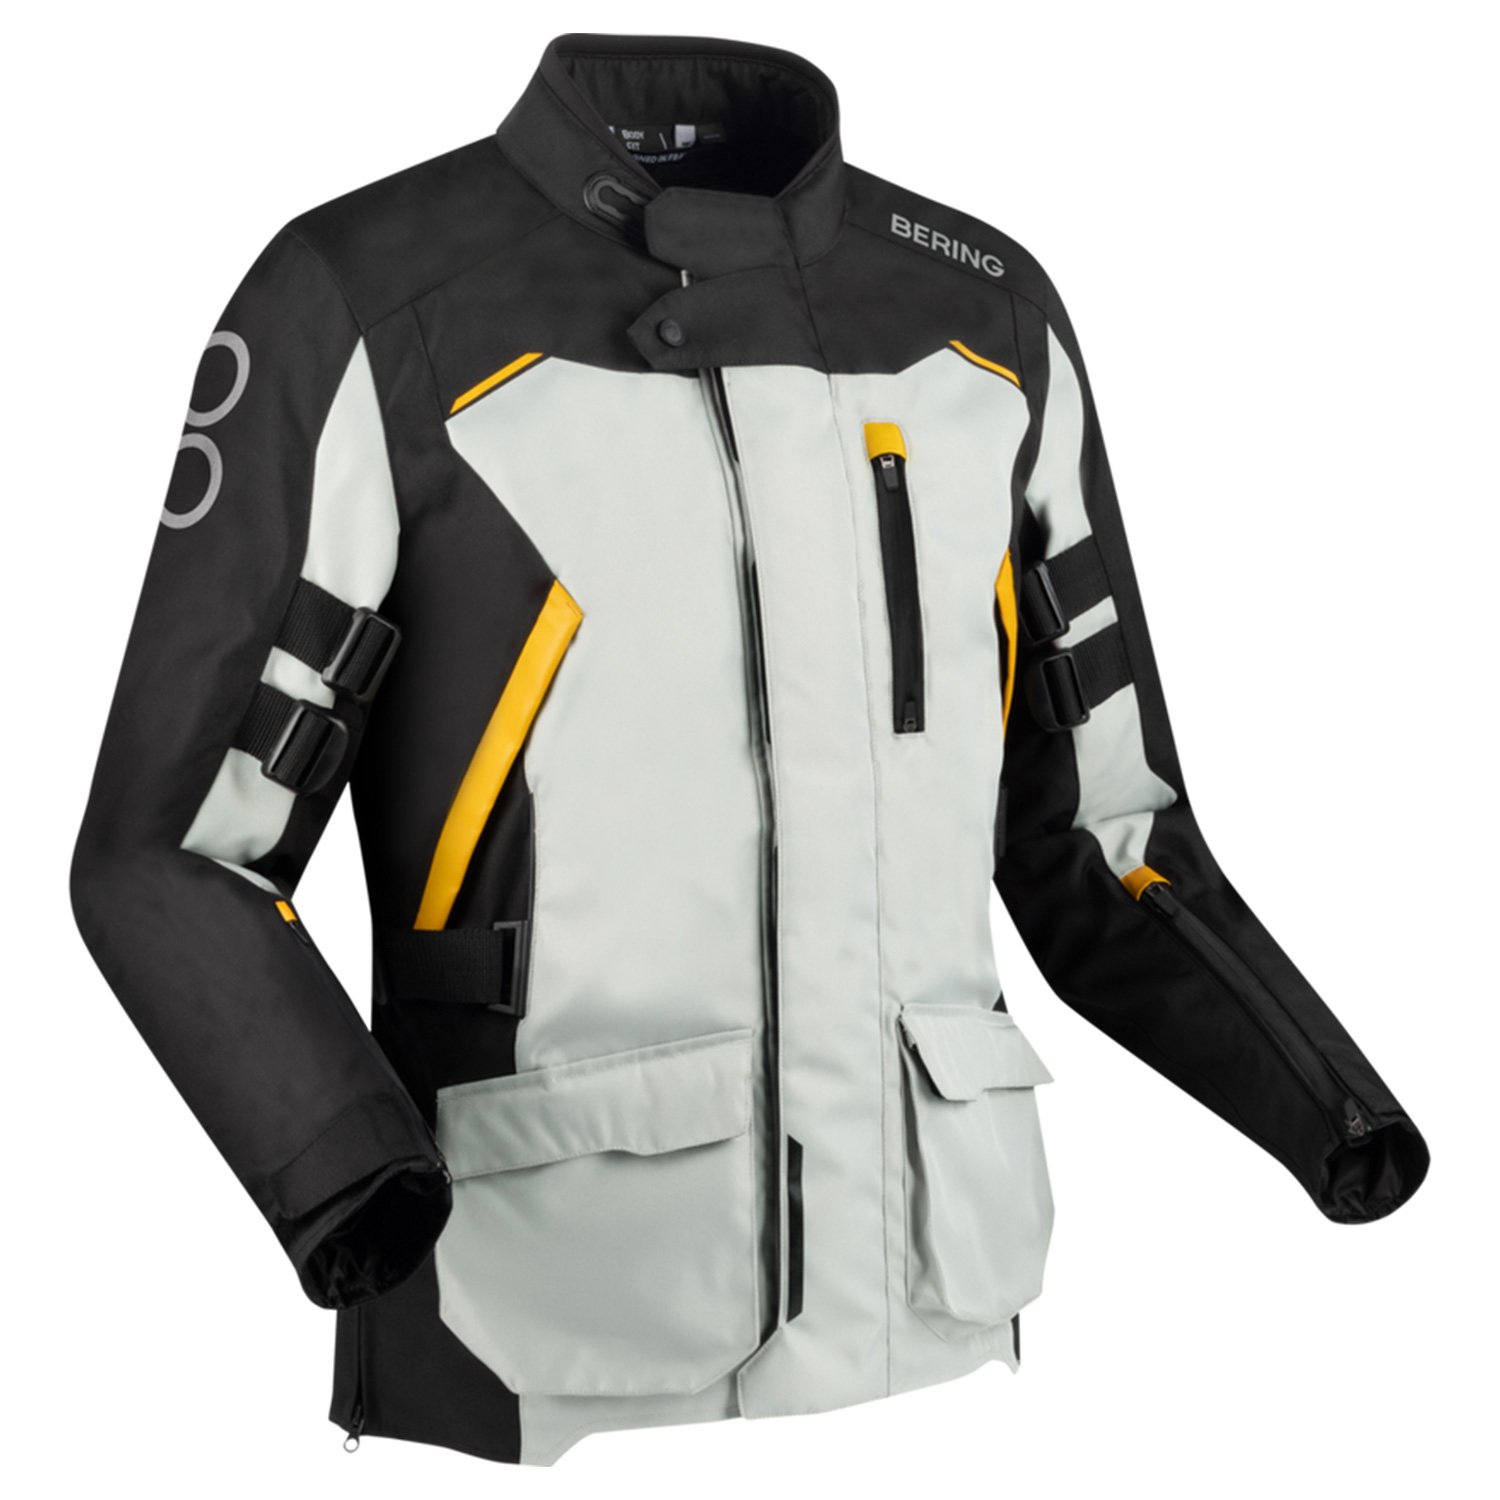 Image of Bering Zephyr Jacket Black Grey Yellow Size S EN